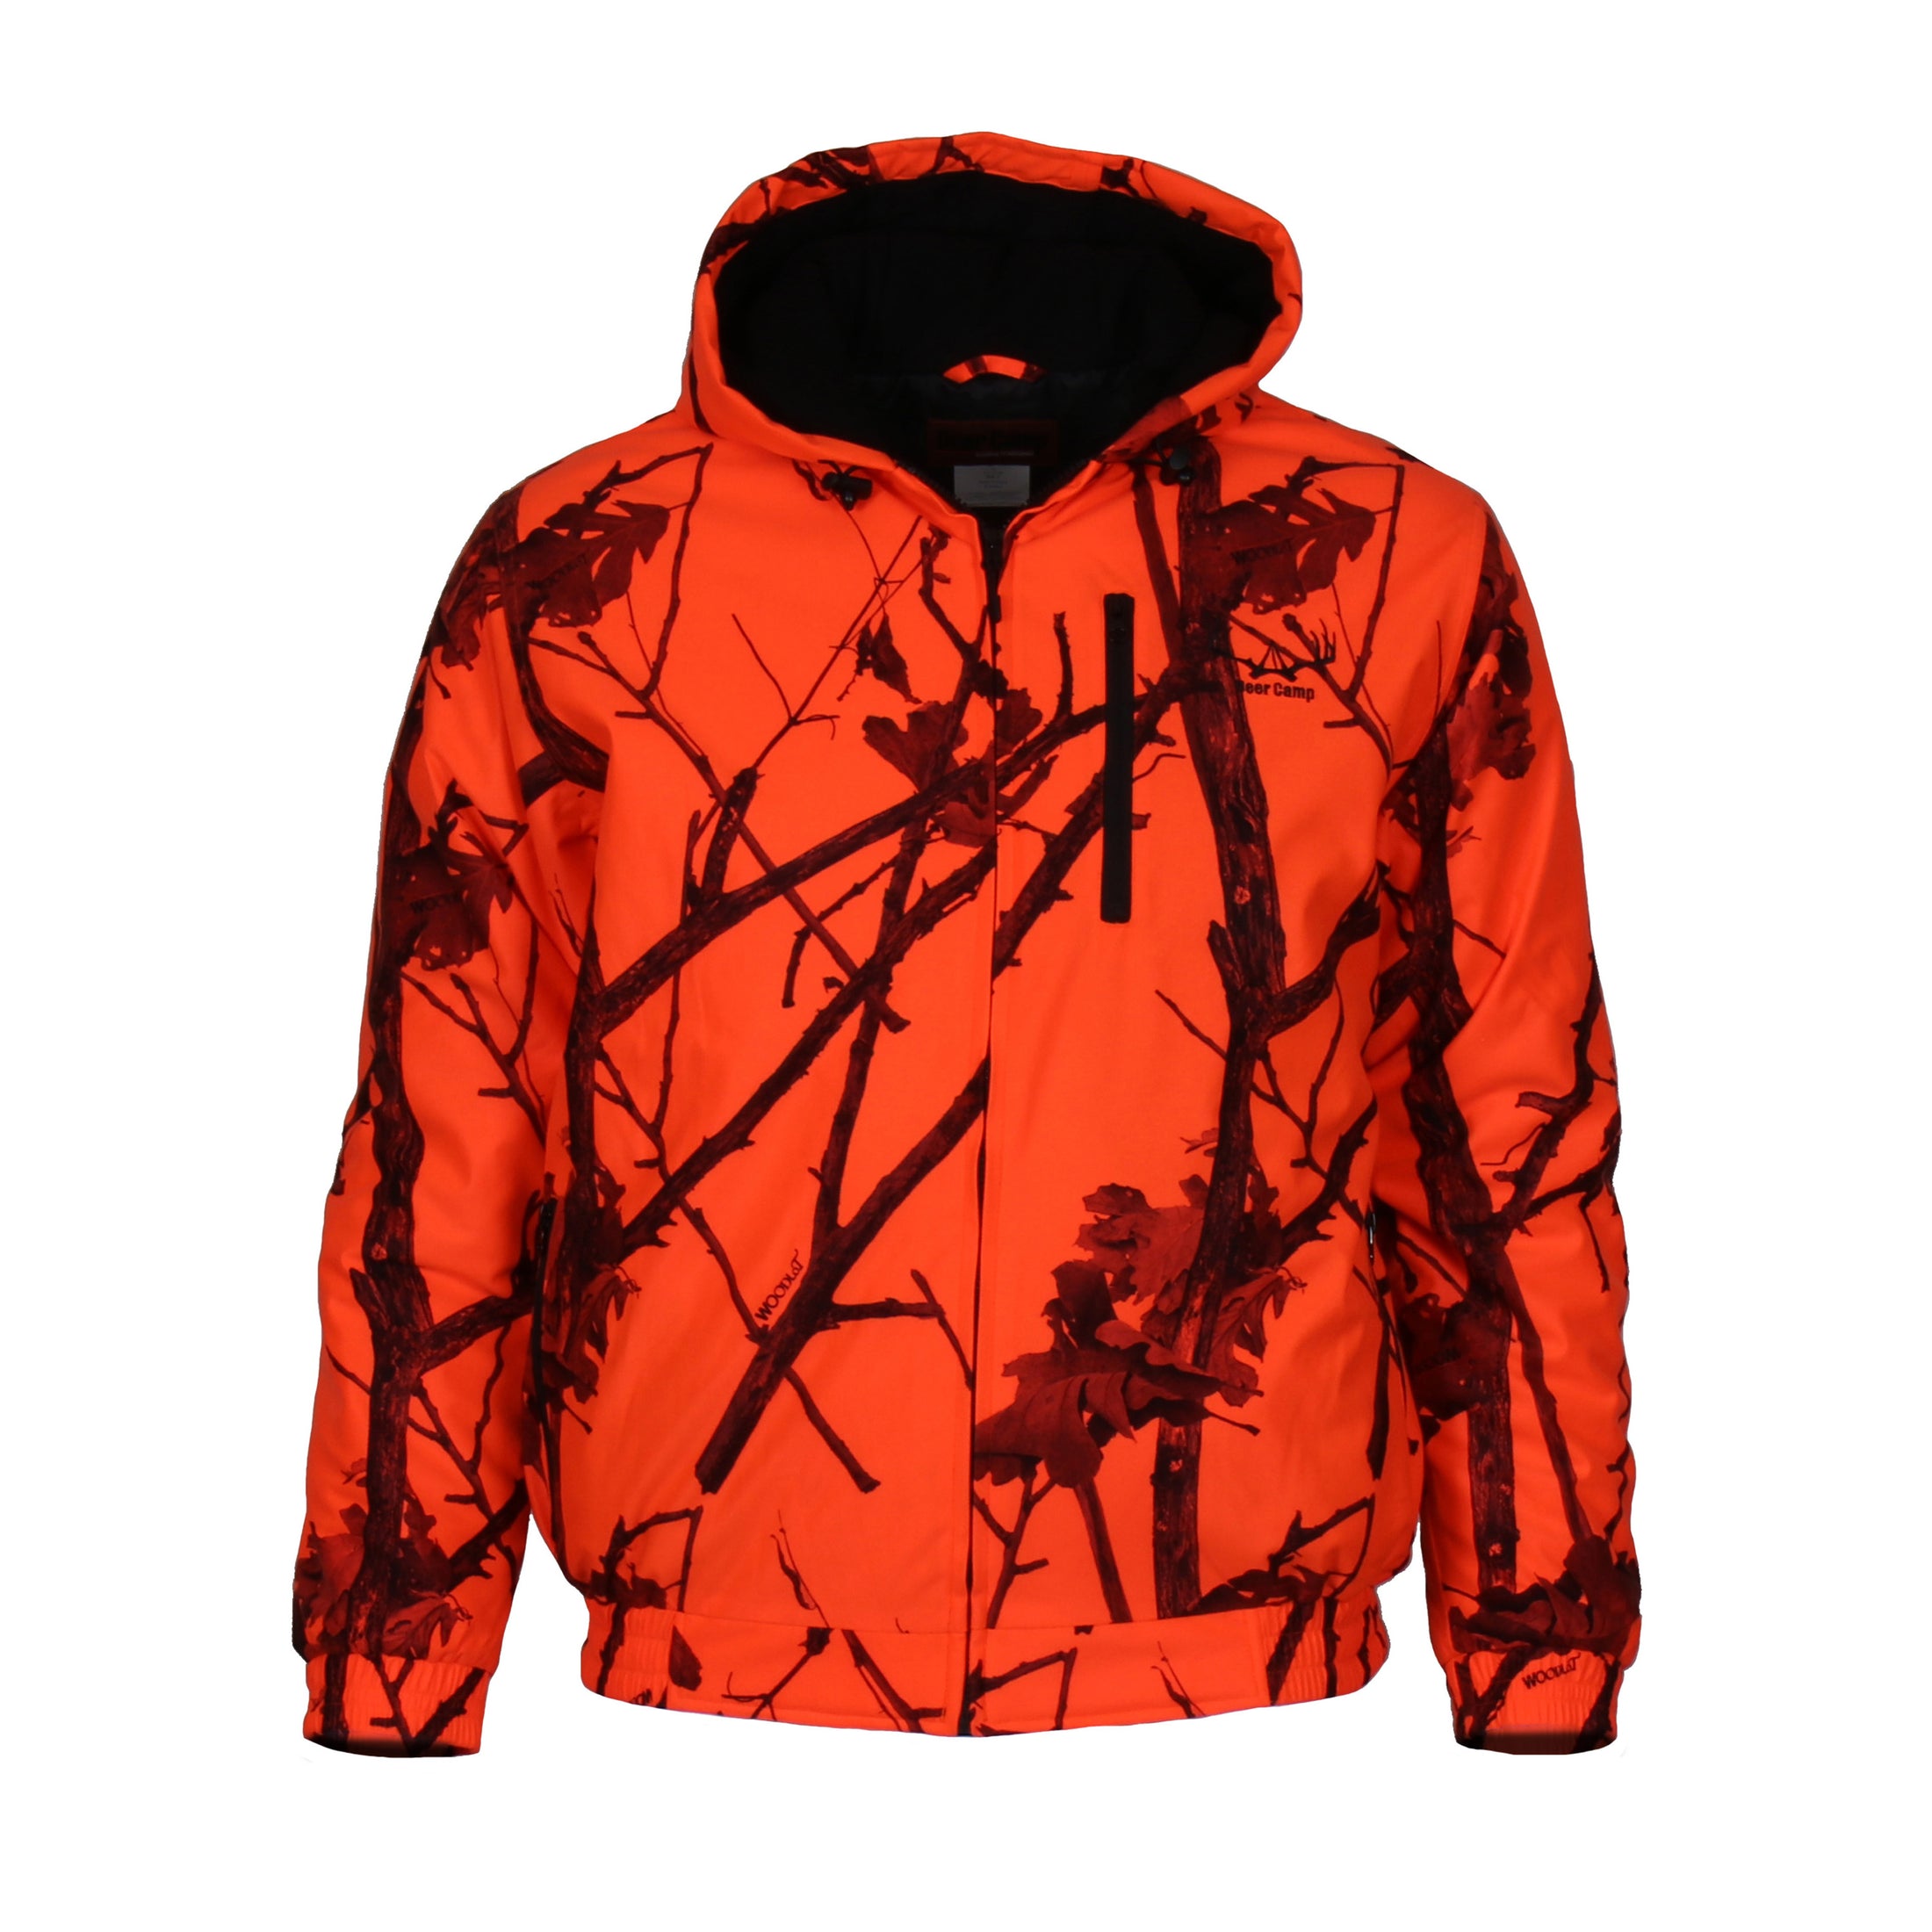 Deer Camp jacket front (woodlot blaze)